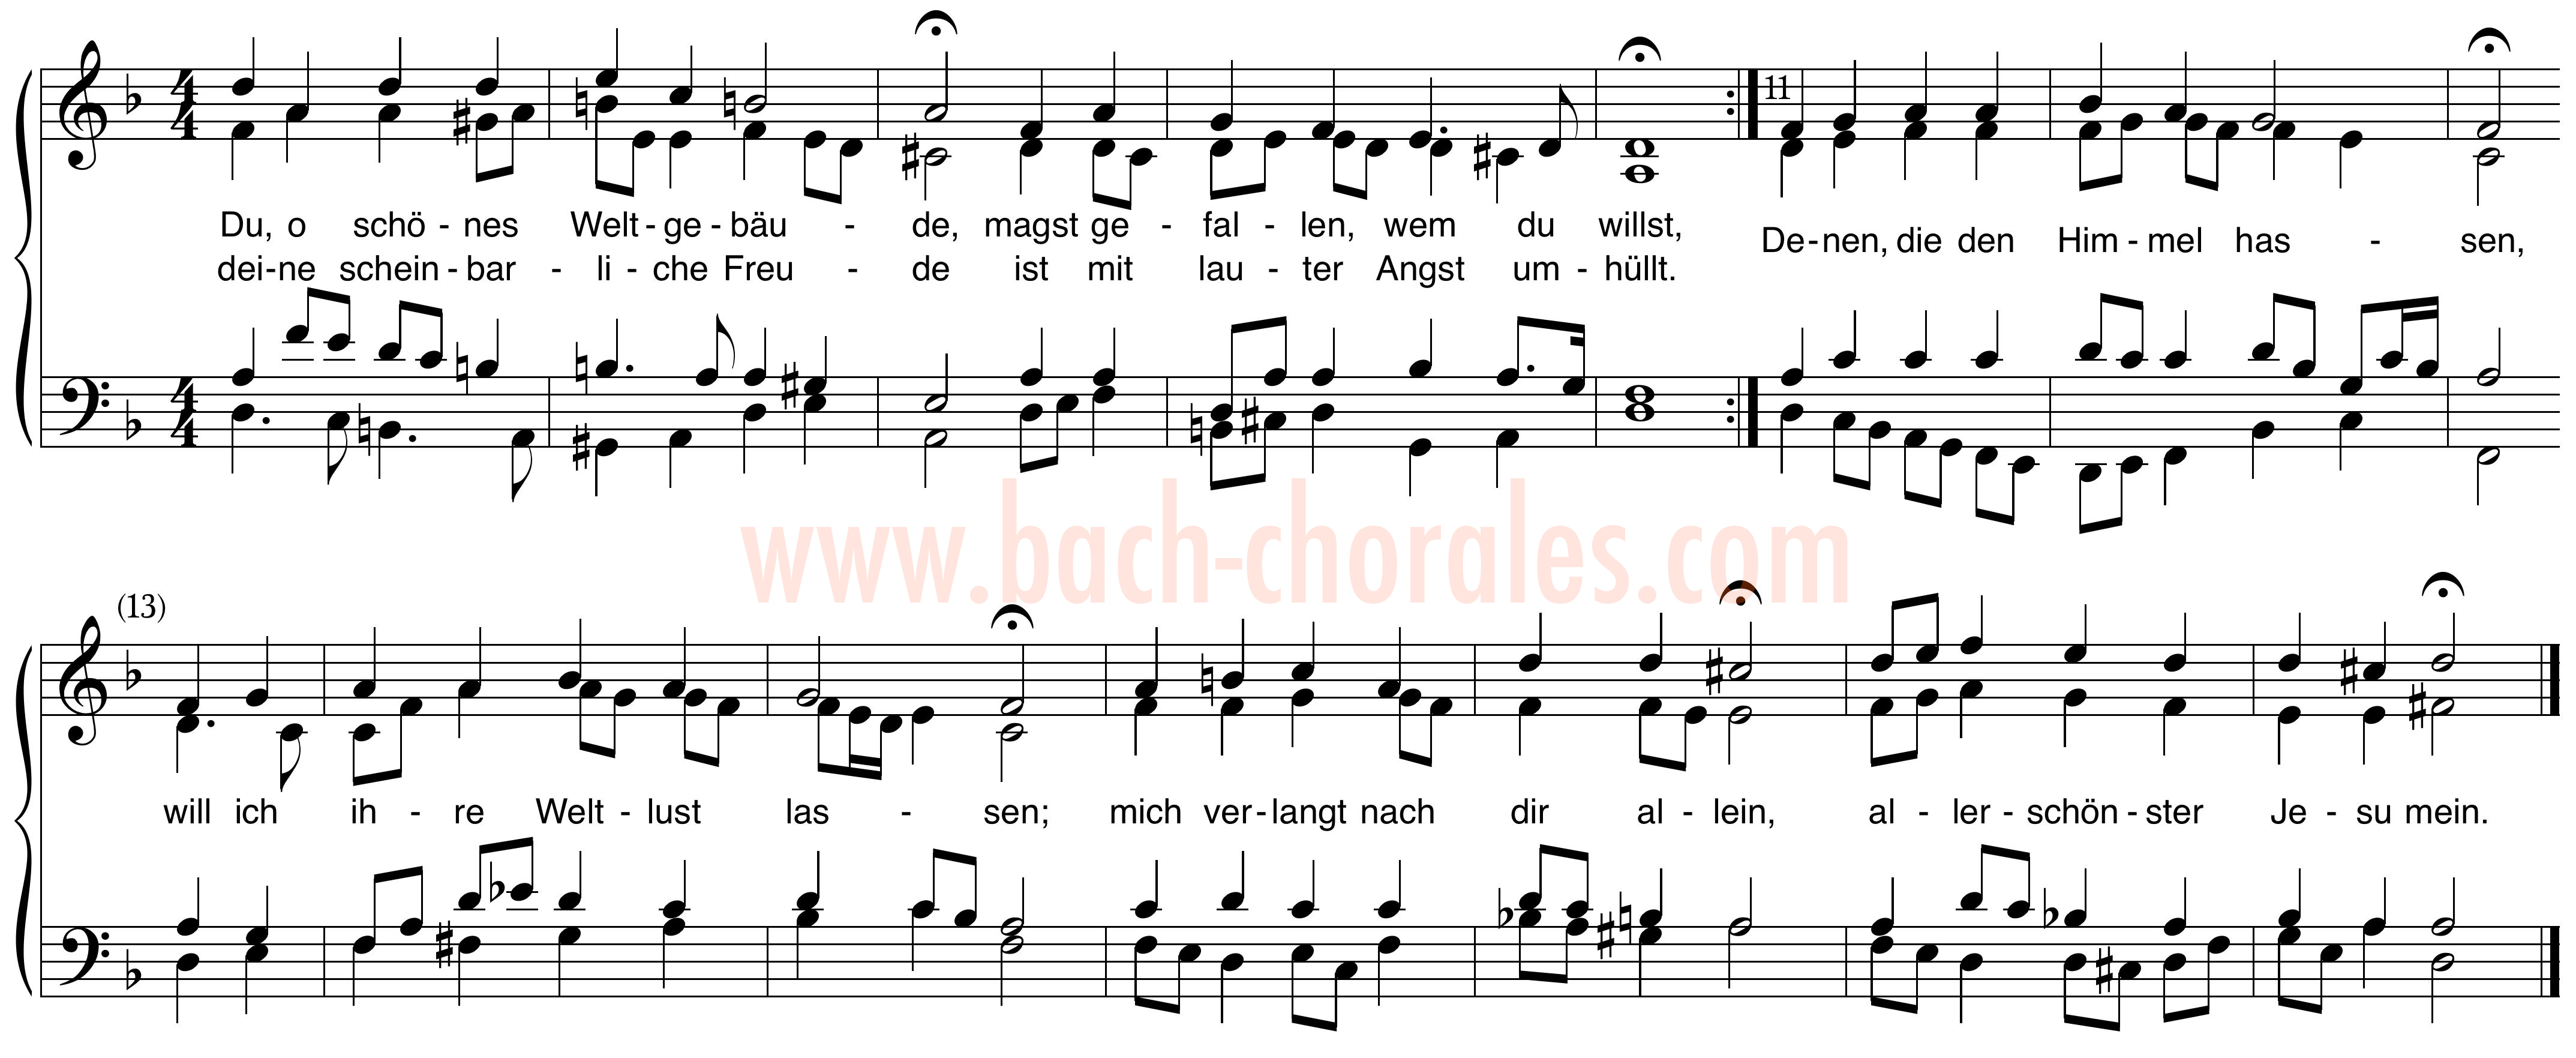 notenbeeld BWV 301 op https://www.bach-chorales.com/